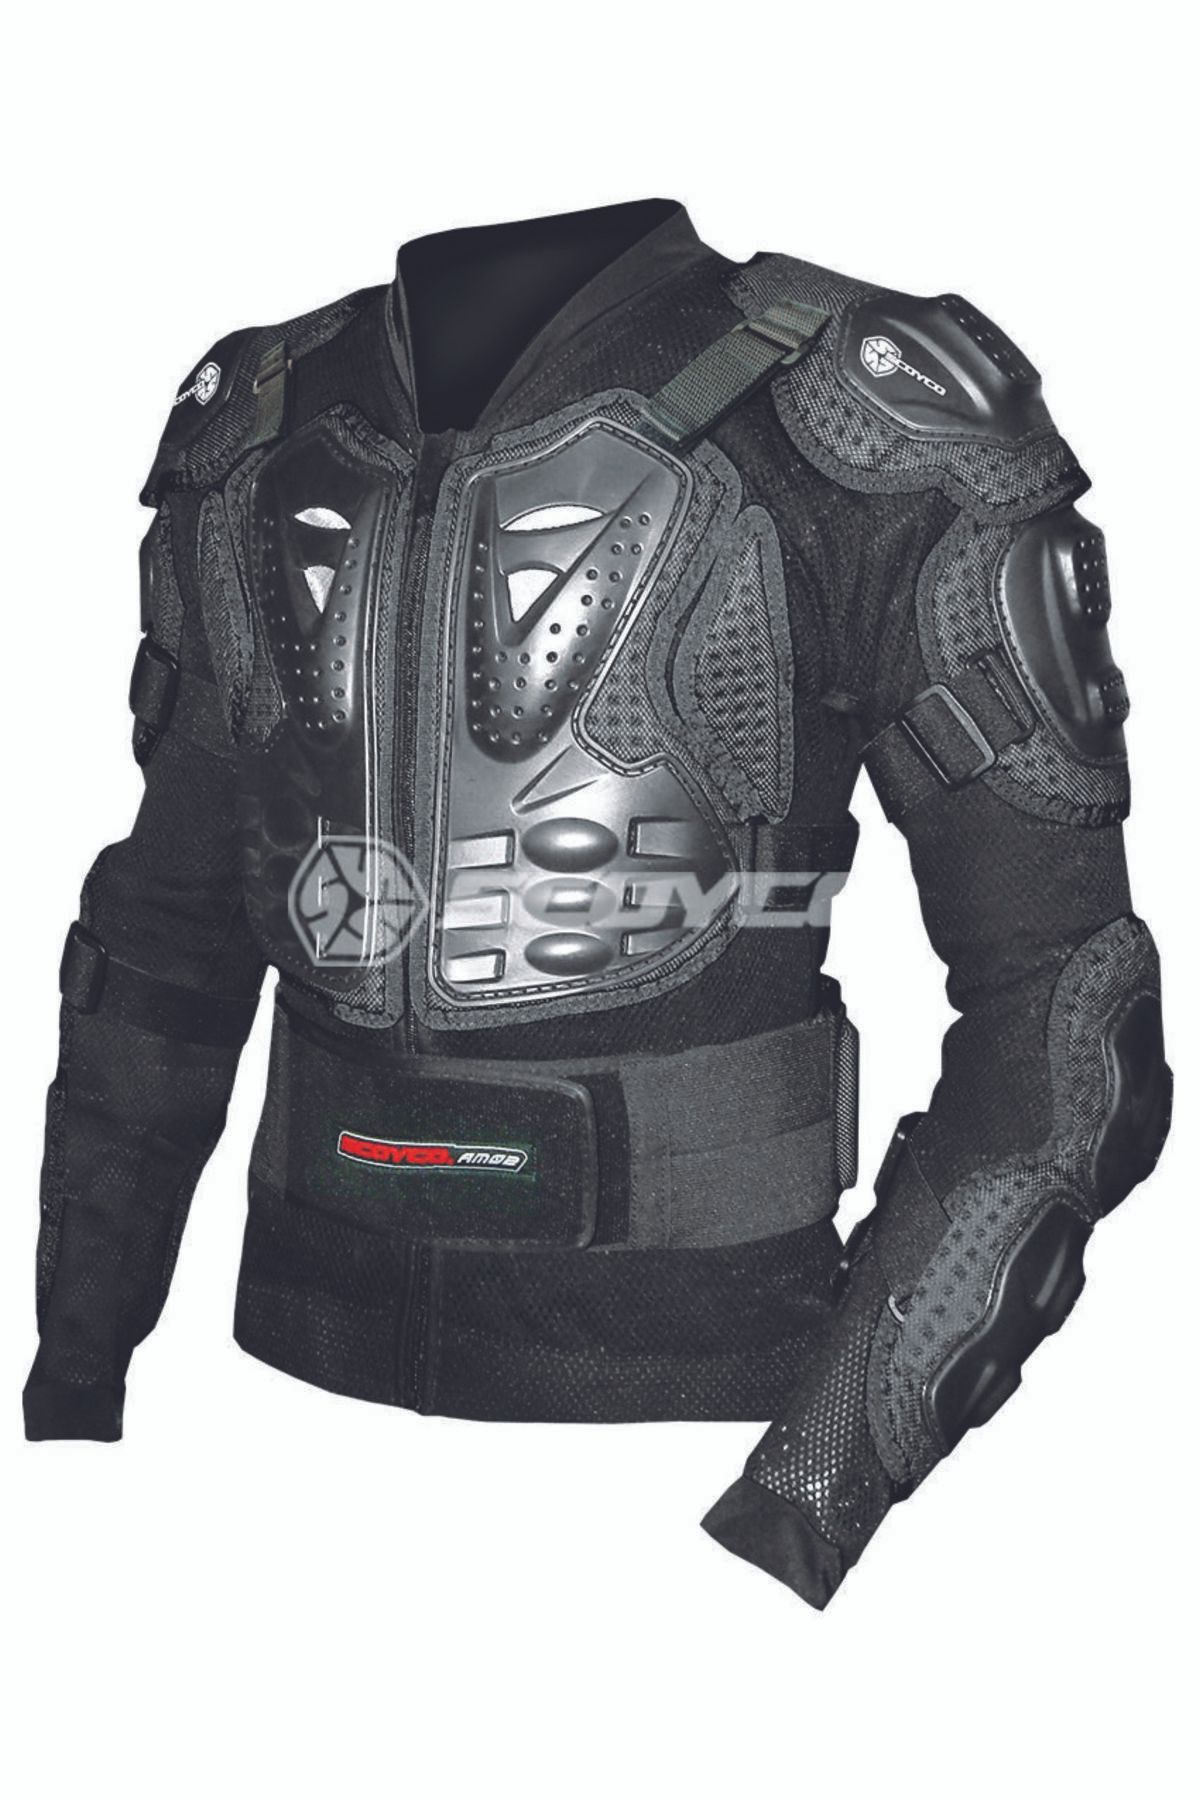 Scoyco K360 Kross Giysi Body Armor